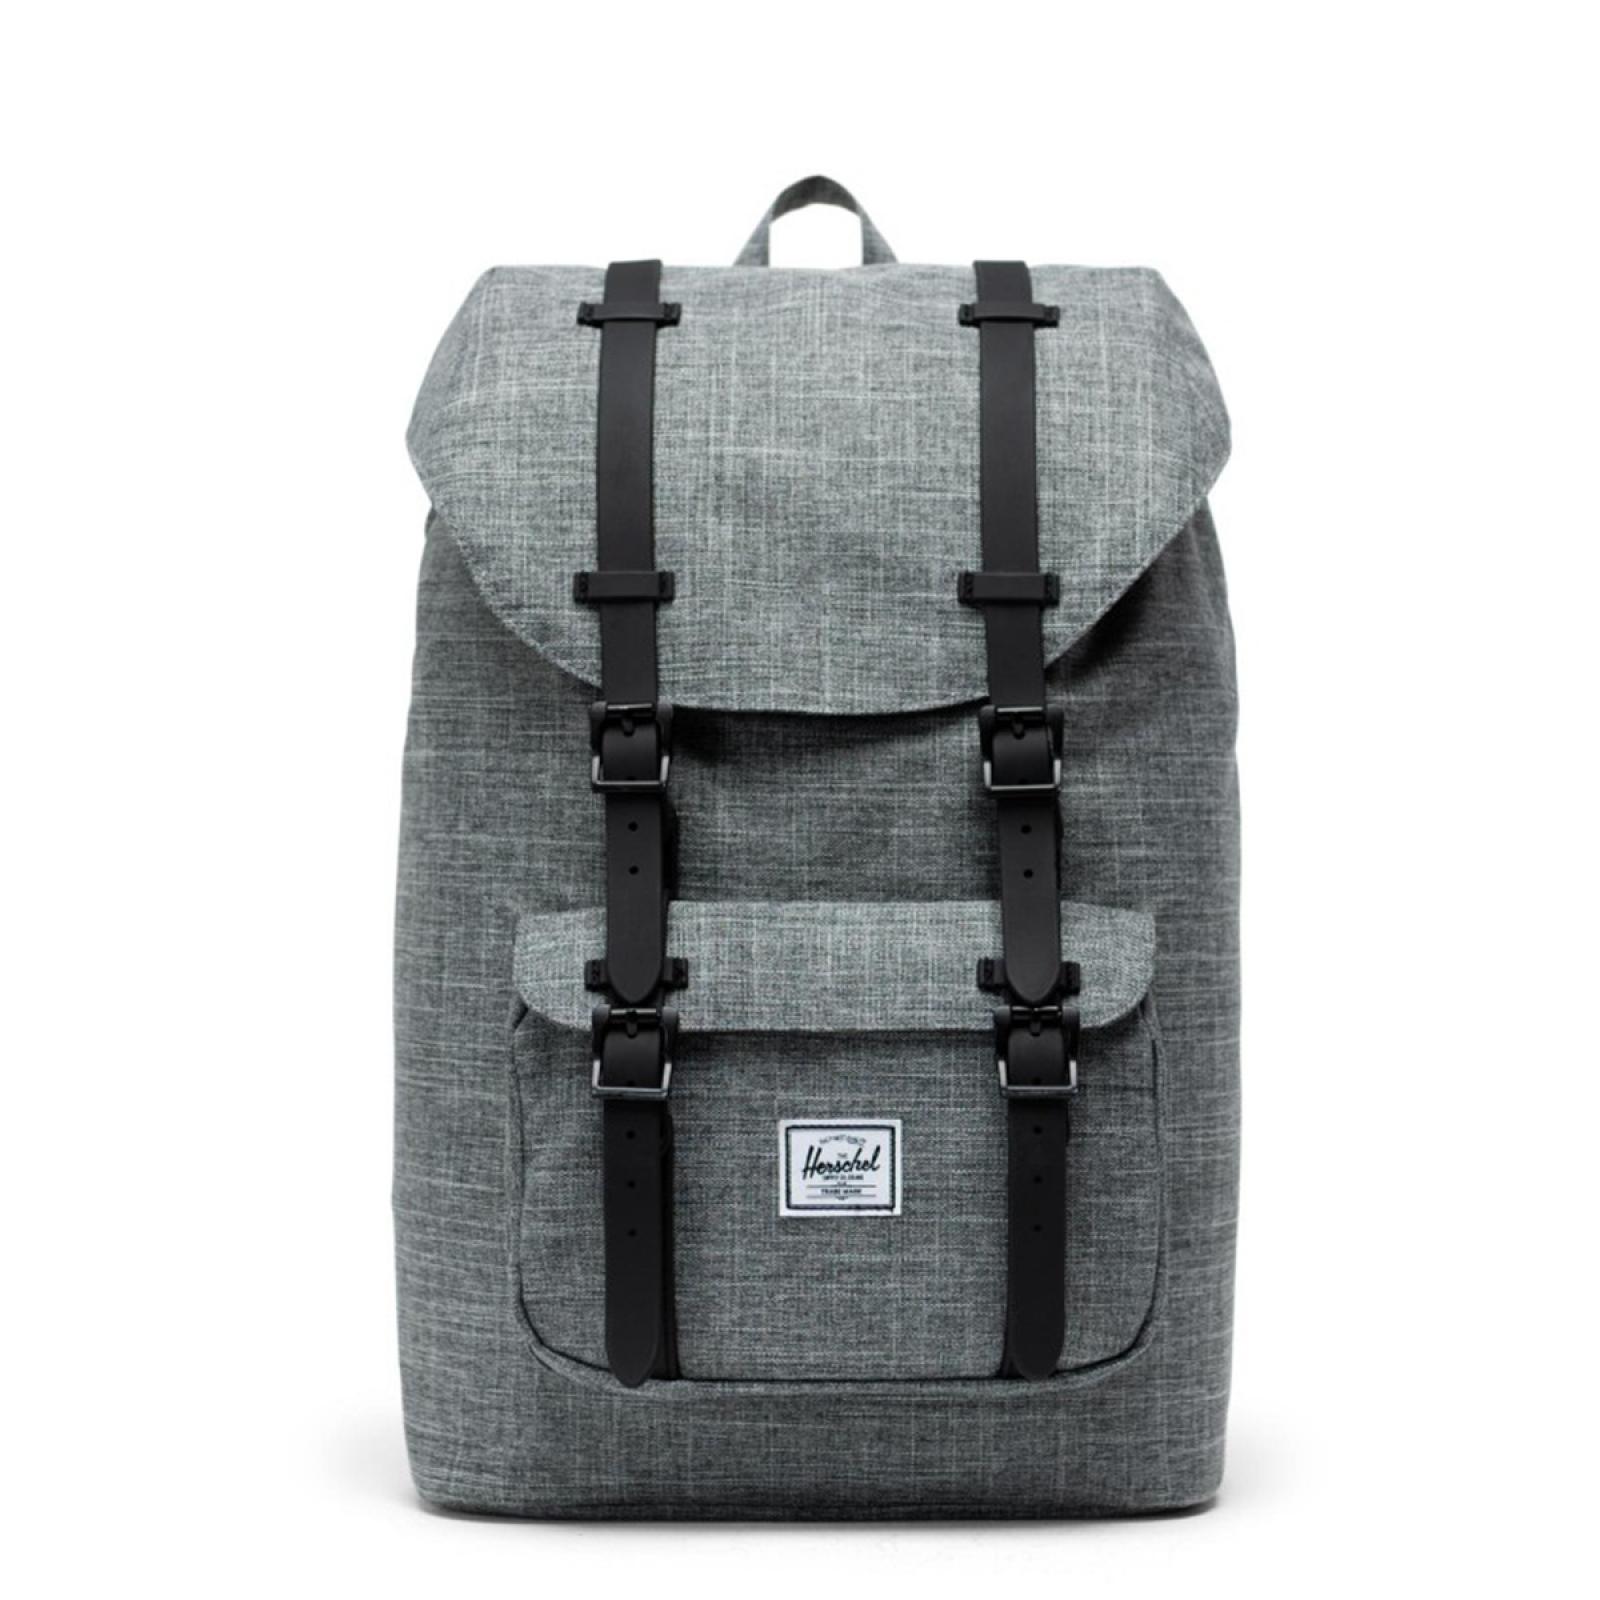 Herschel Little America Mid Backpack 13.0 - 1